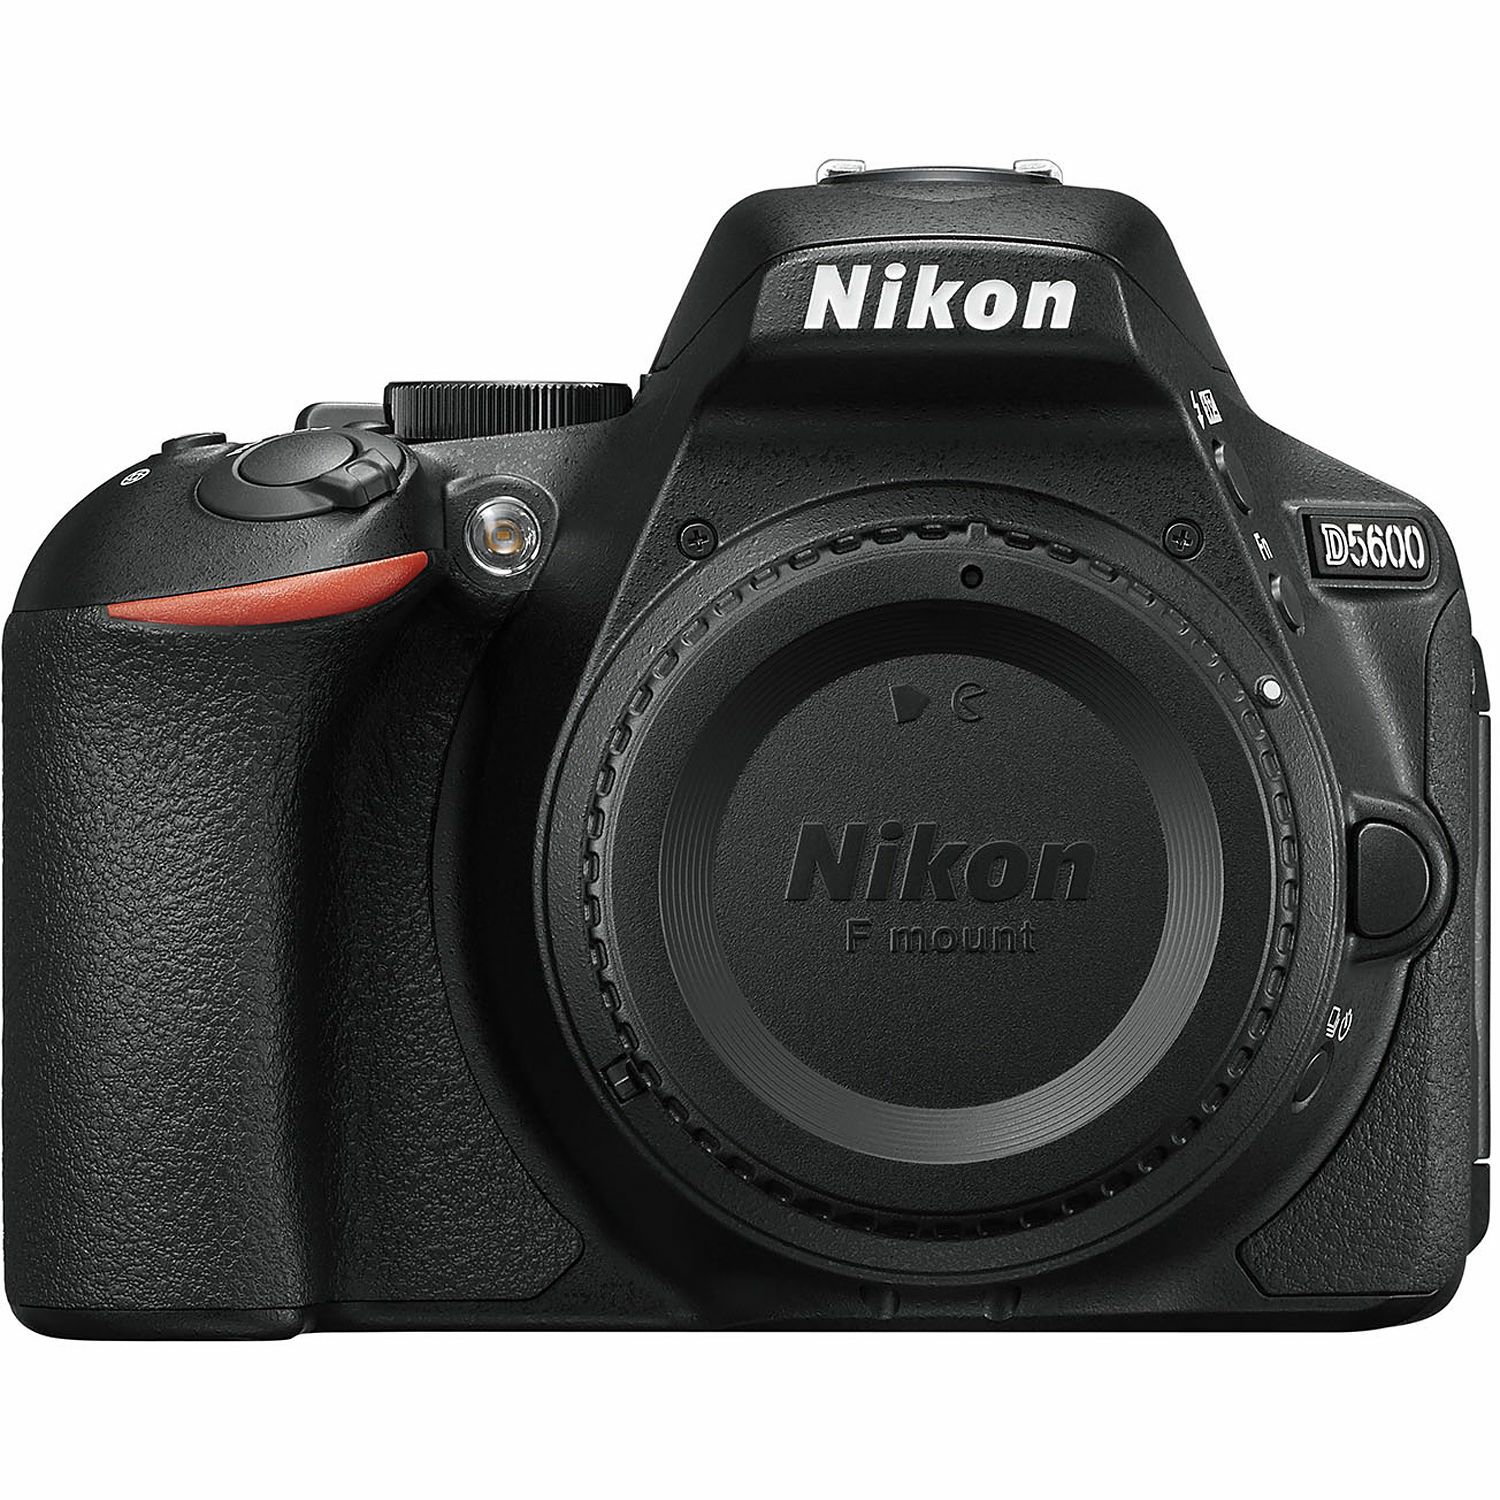 Nikon D5600 + AF-P 18-55 VR + AF-S 55-300 VR DX KIT DSLR Digitalni fotoaparat s dva objektiva 18-55mm f/3.5-5.6 i 55-300mm (VBA500K001-2)